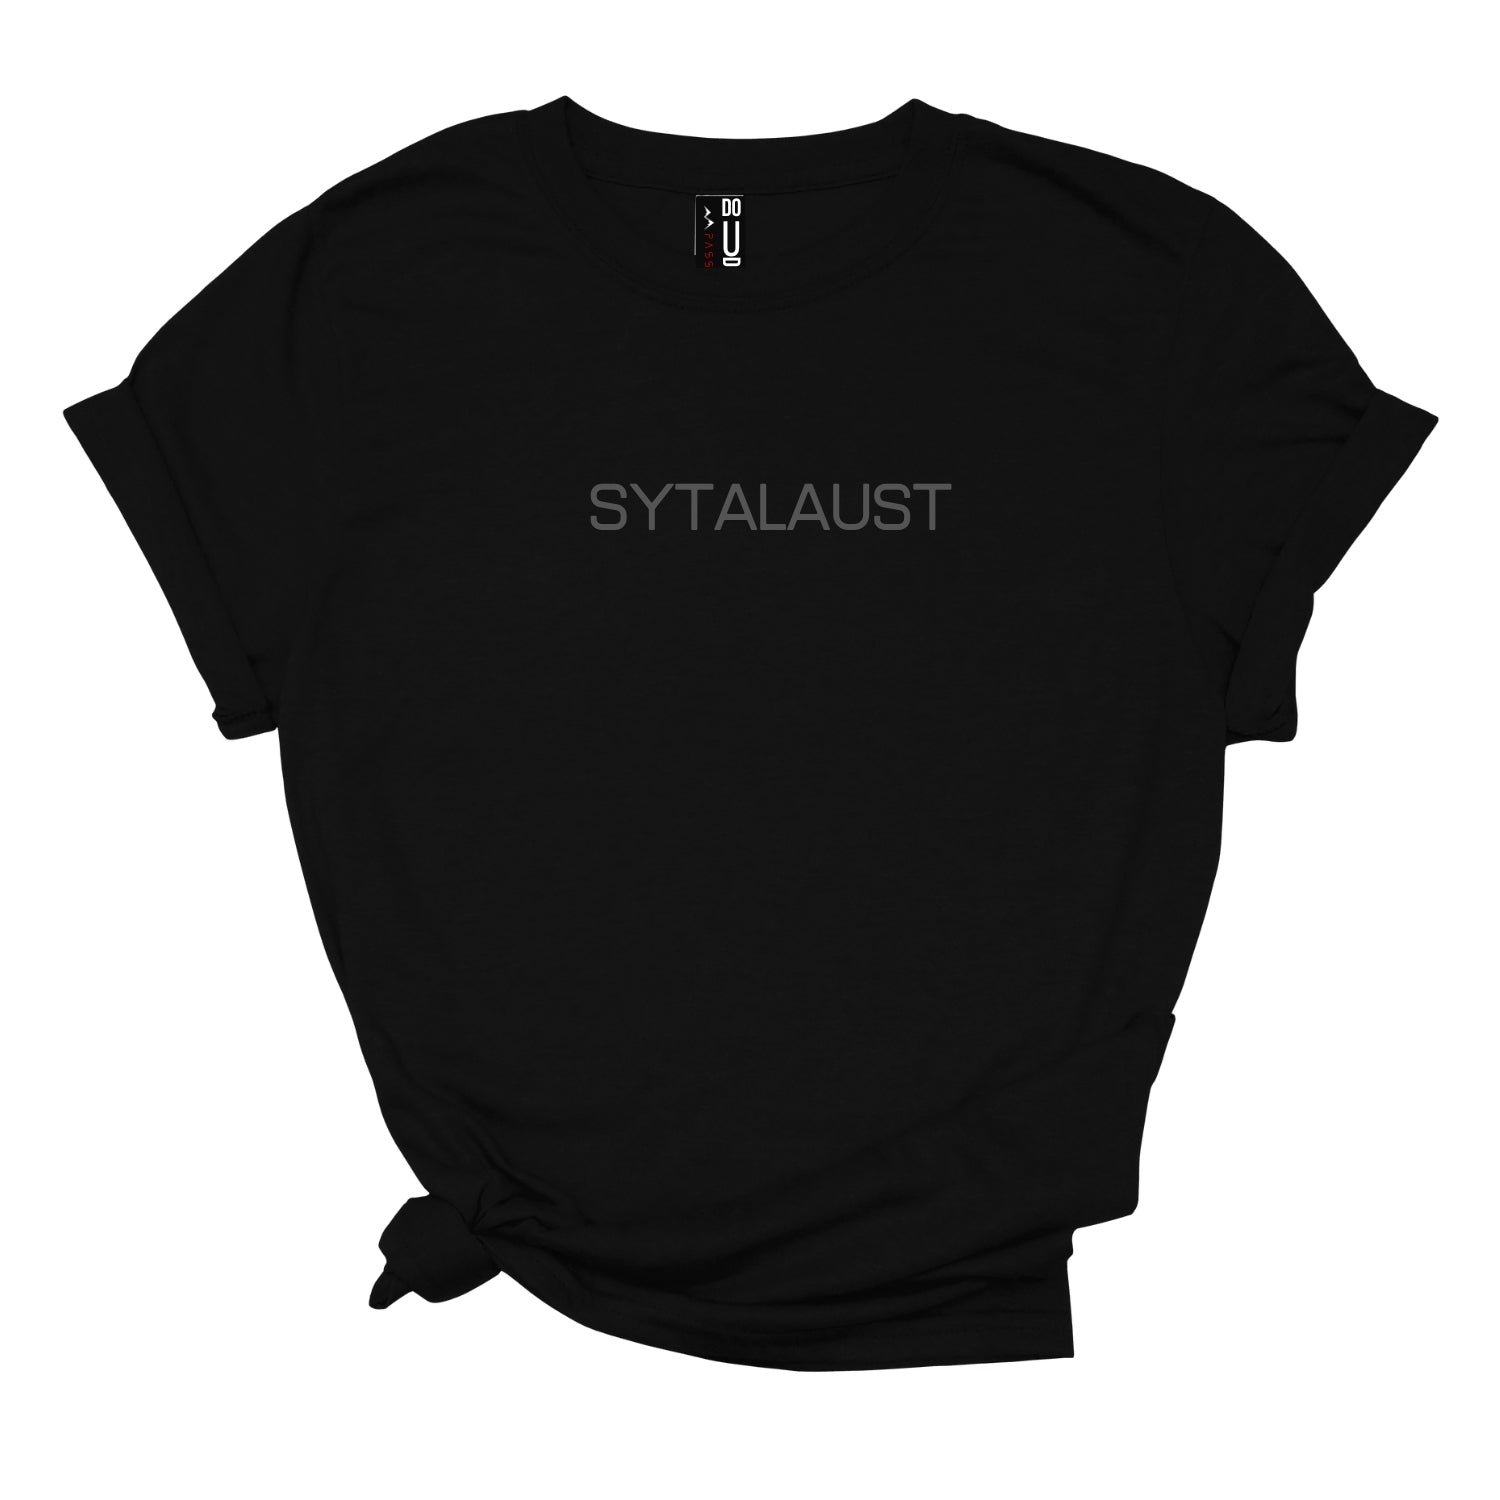 SYTALAUST Sunnmørs TEE t-skjorte i dame modell med Sunnmørs-sitat og uttrykk - DoUdare